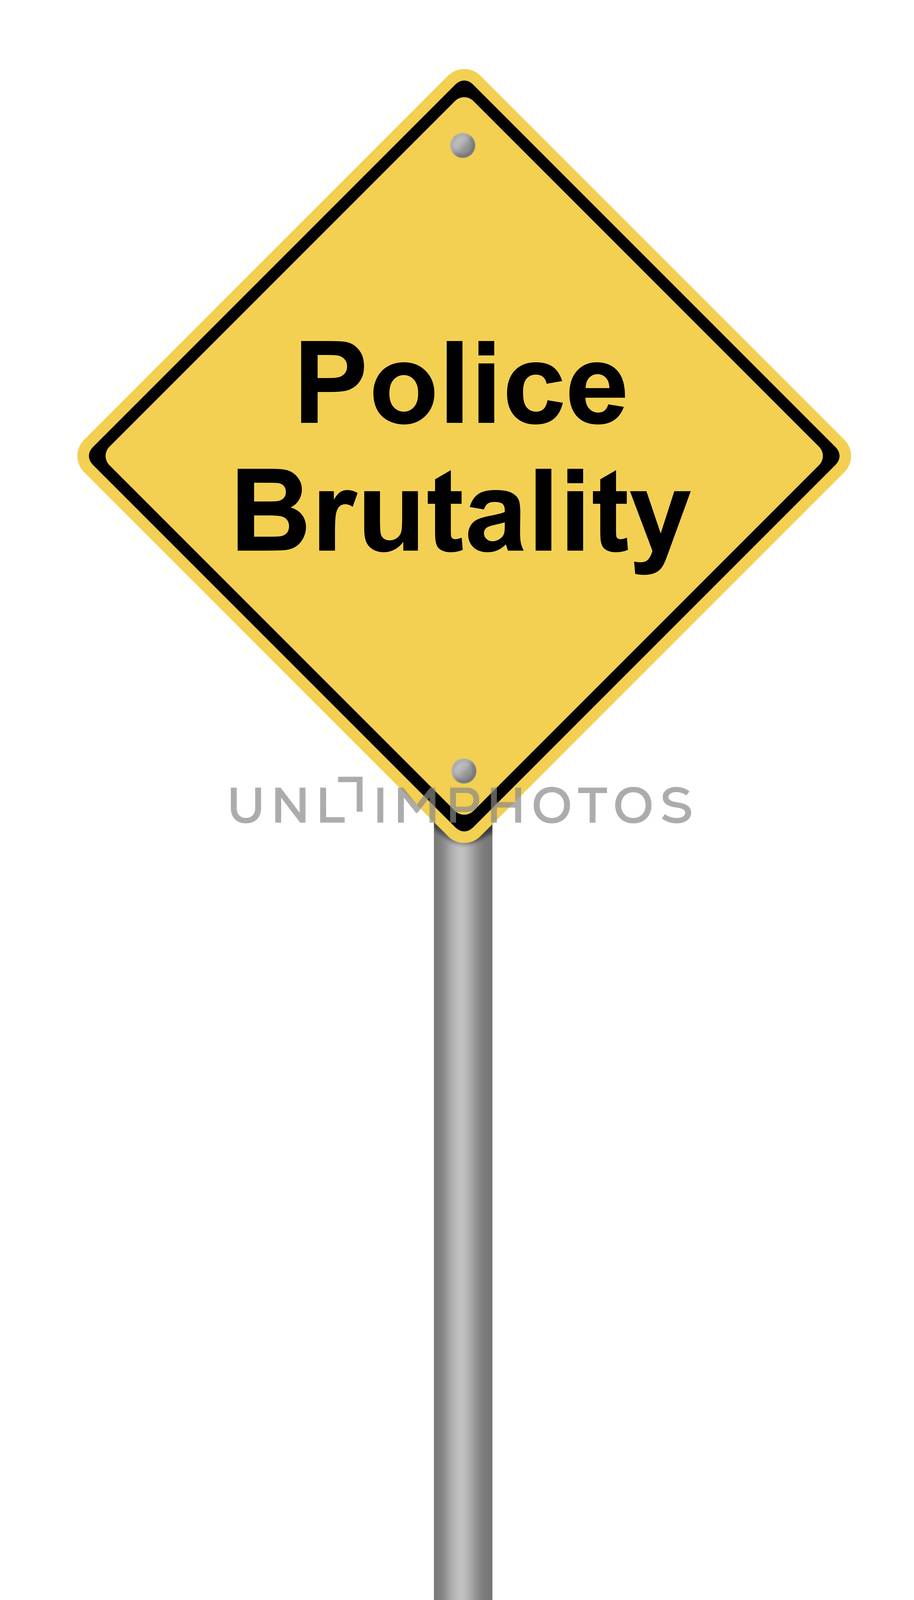 Police Brutality by hlehnerer